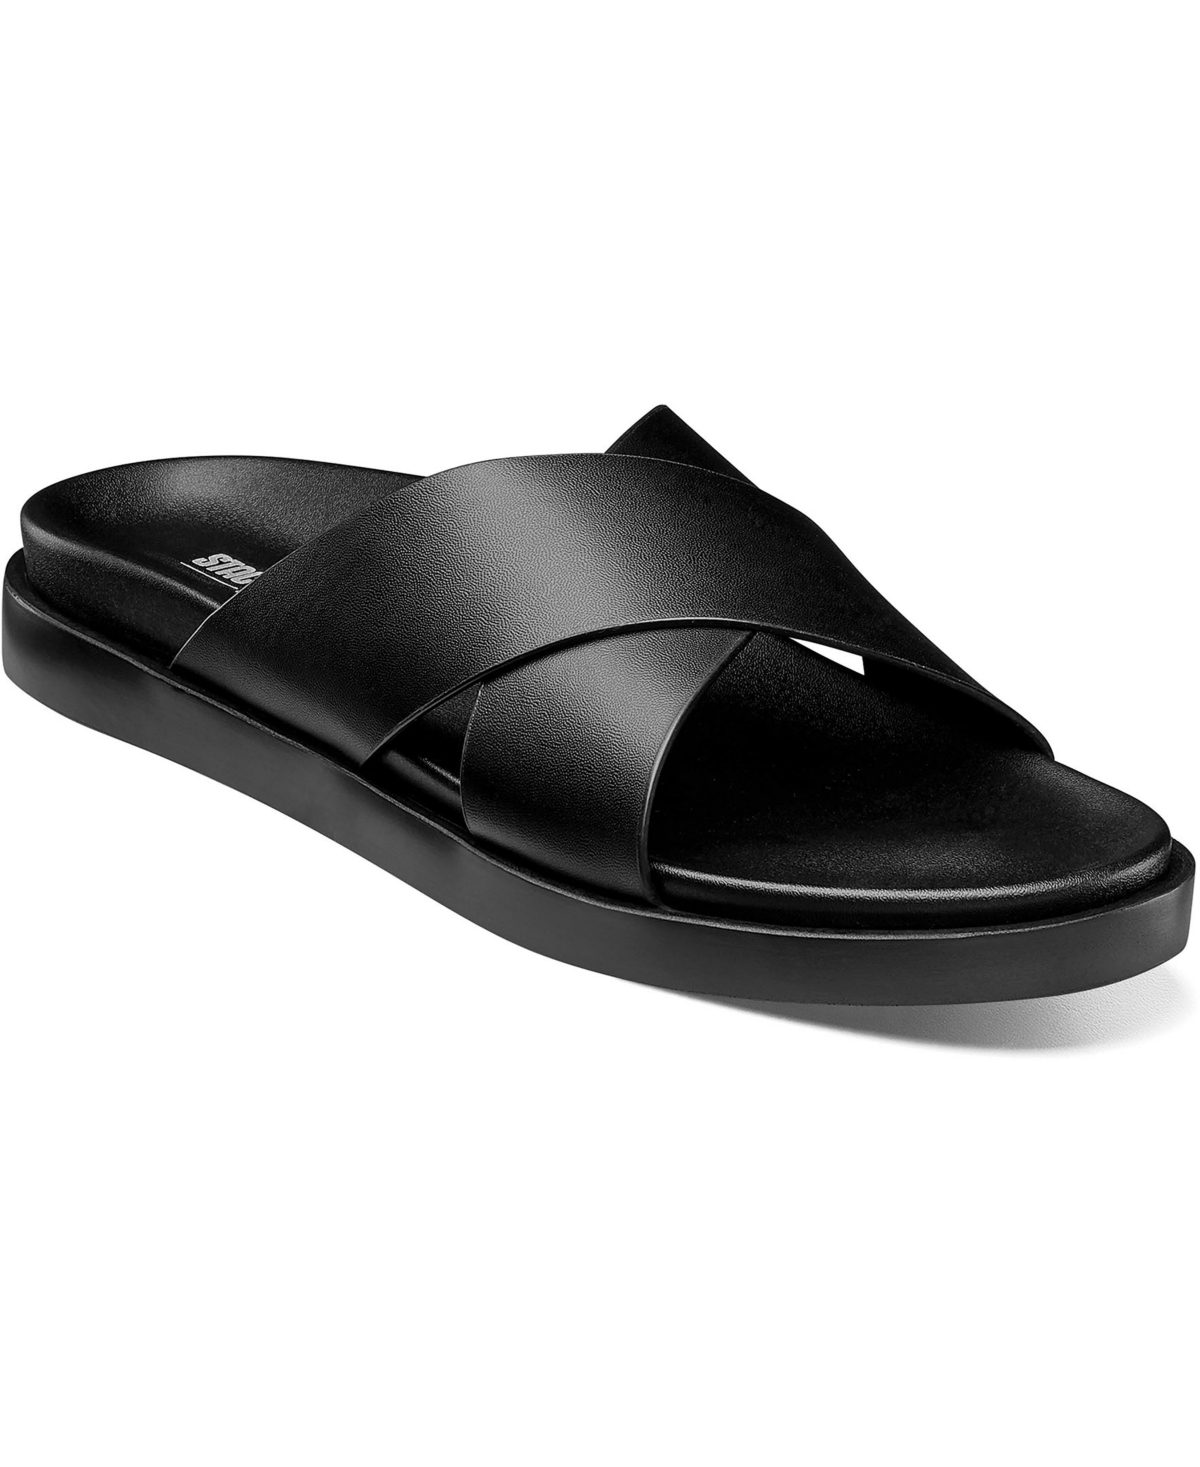 Men's Montel Cross Strap Slide Sandal - Black